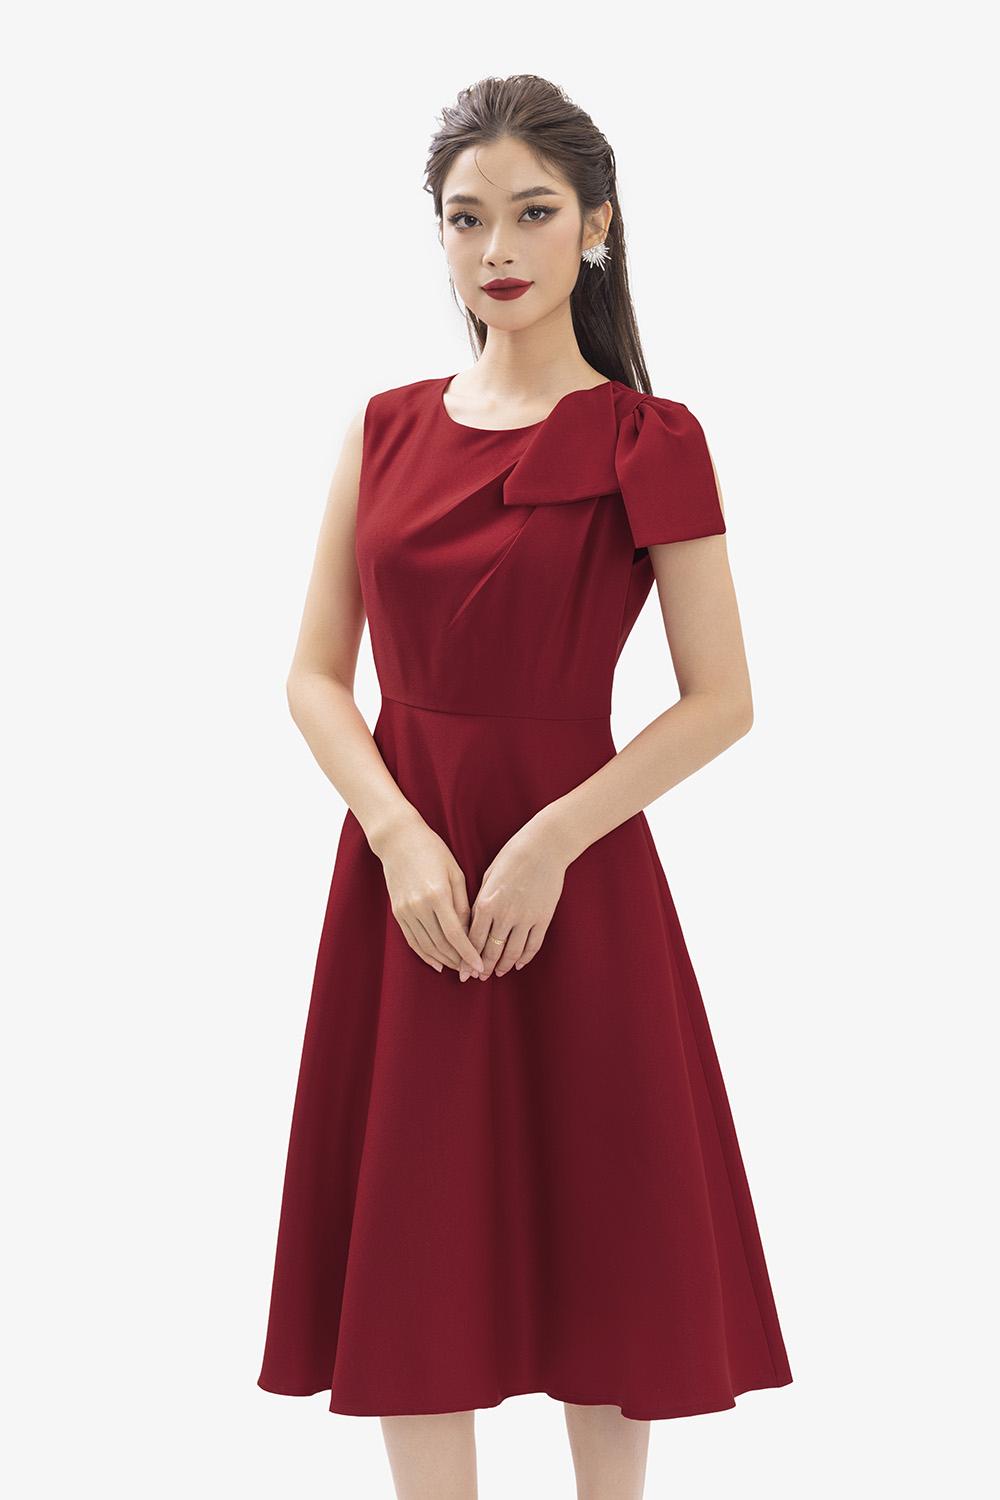 Mẫu váy đầm xòe dự tiệc cưới màu đỏ cô vuông đính hạt ngọc sang trọng thanh  lịch có bigsize mẫu mới giá rẻ đẹp hót hít , váy đầm đi chơi